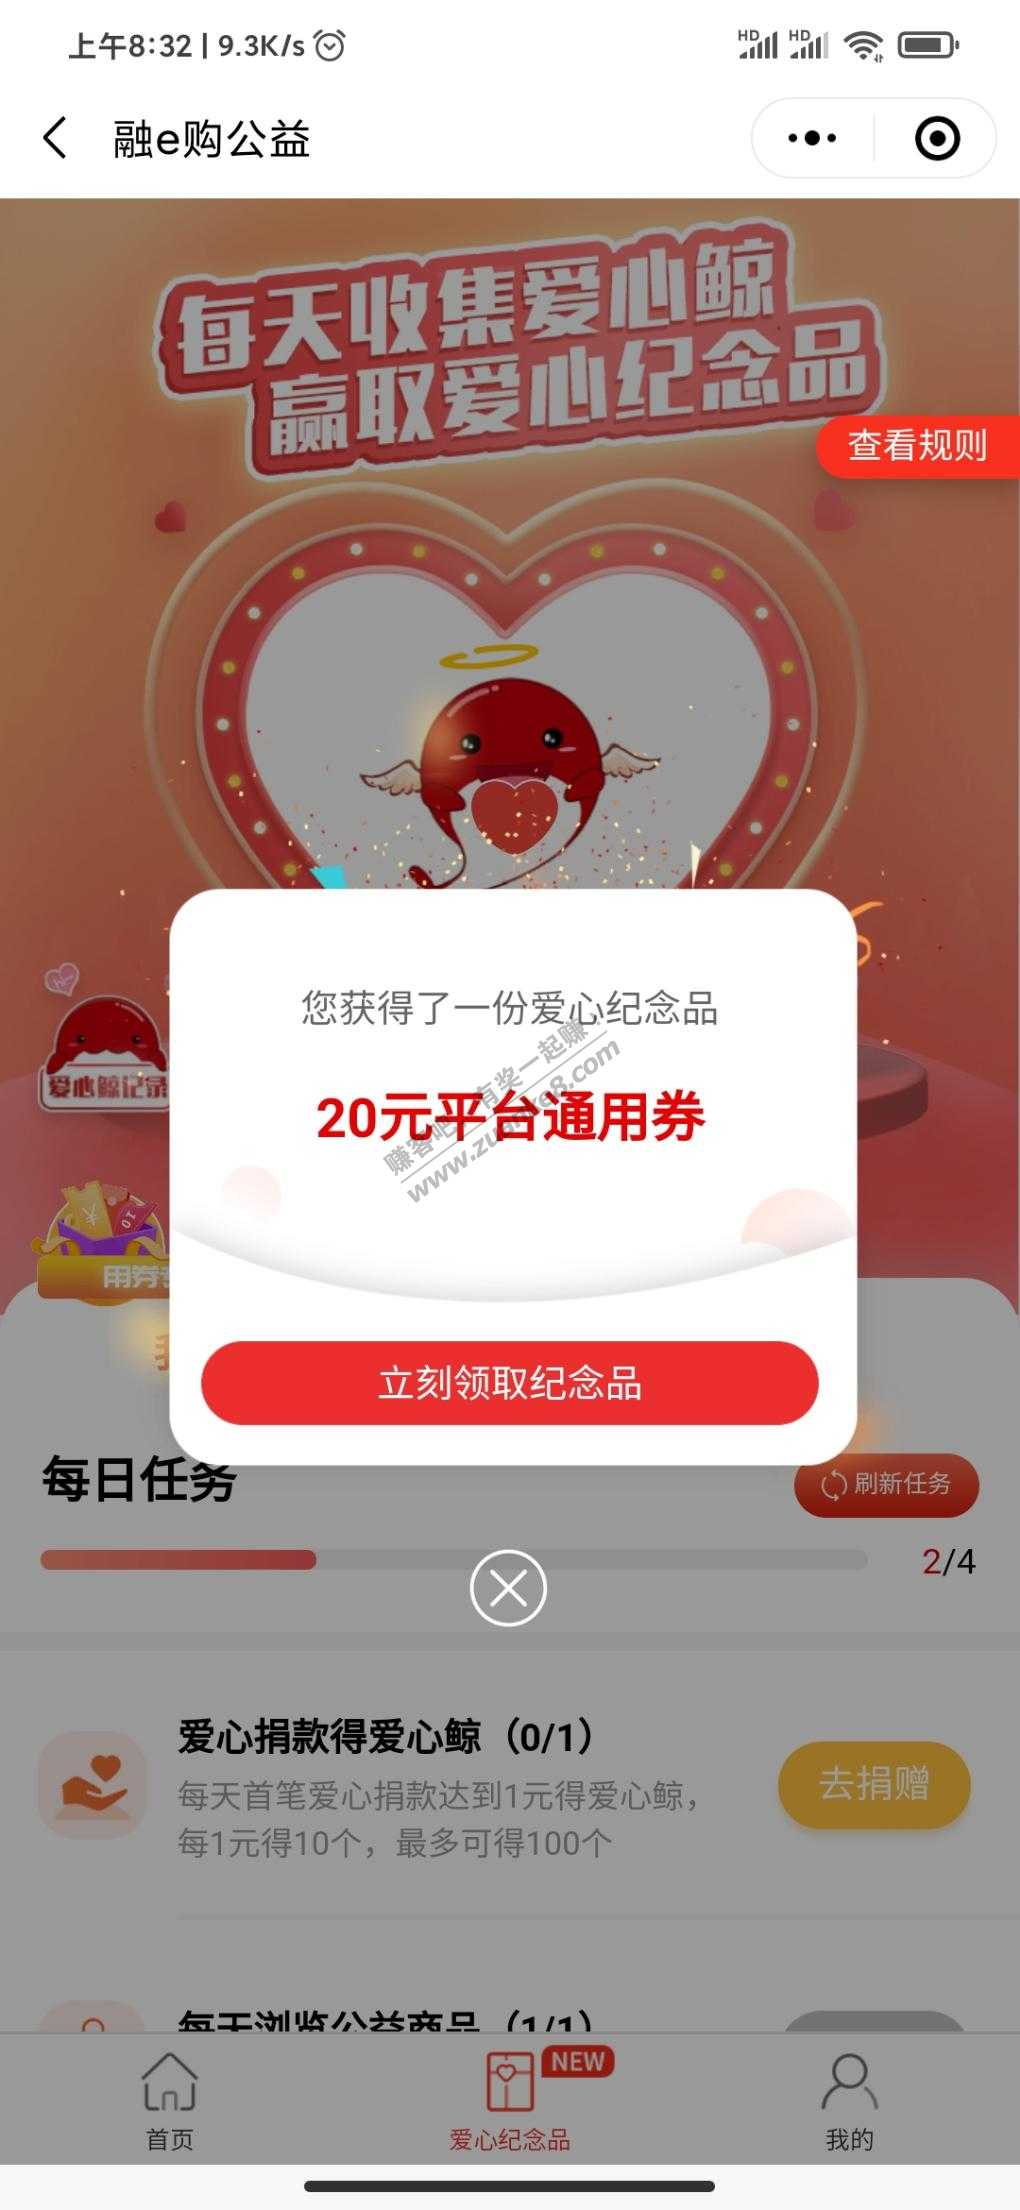 融易购公益20-惠小助(52huixz.com)